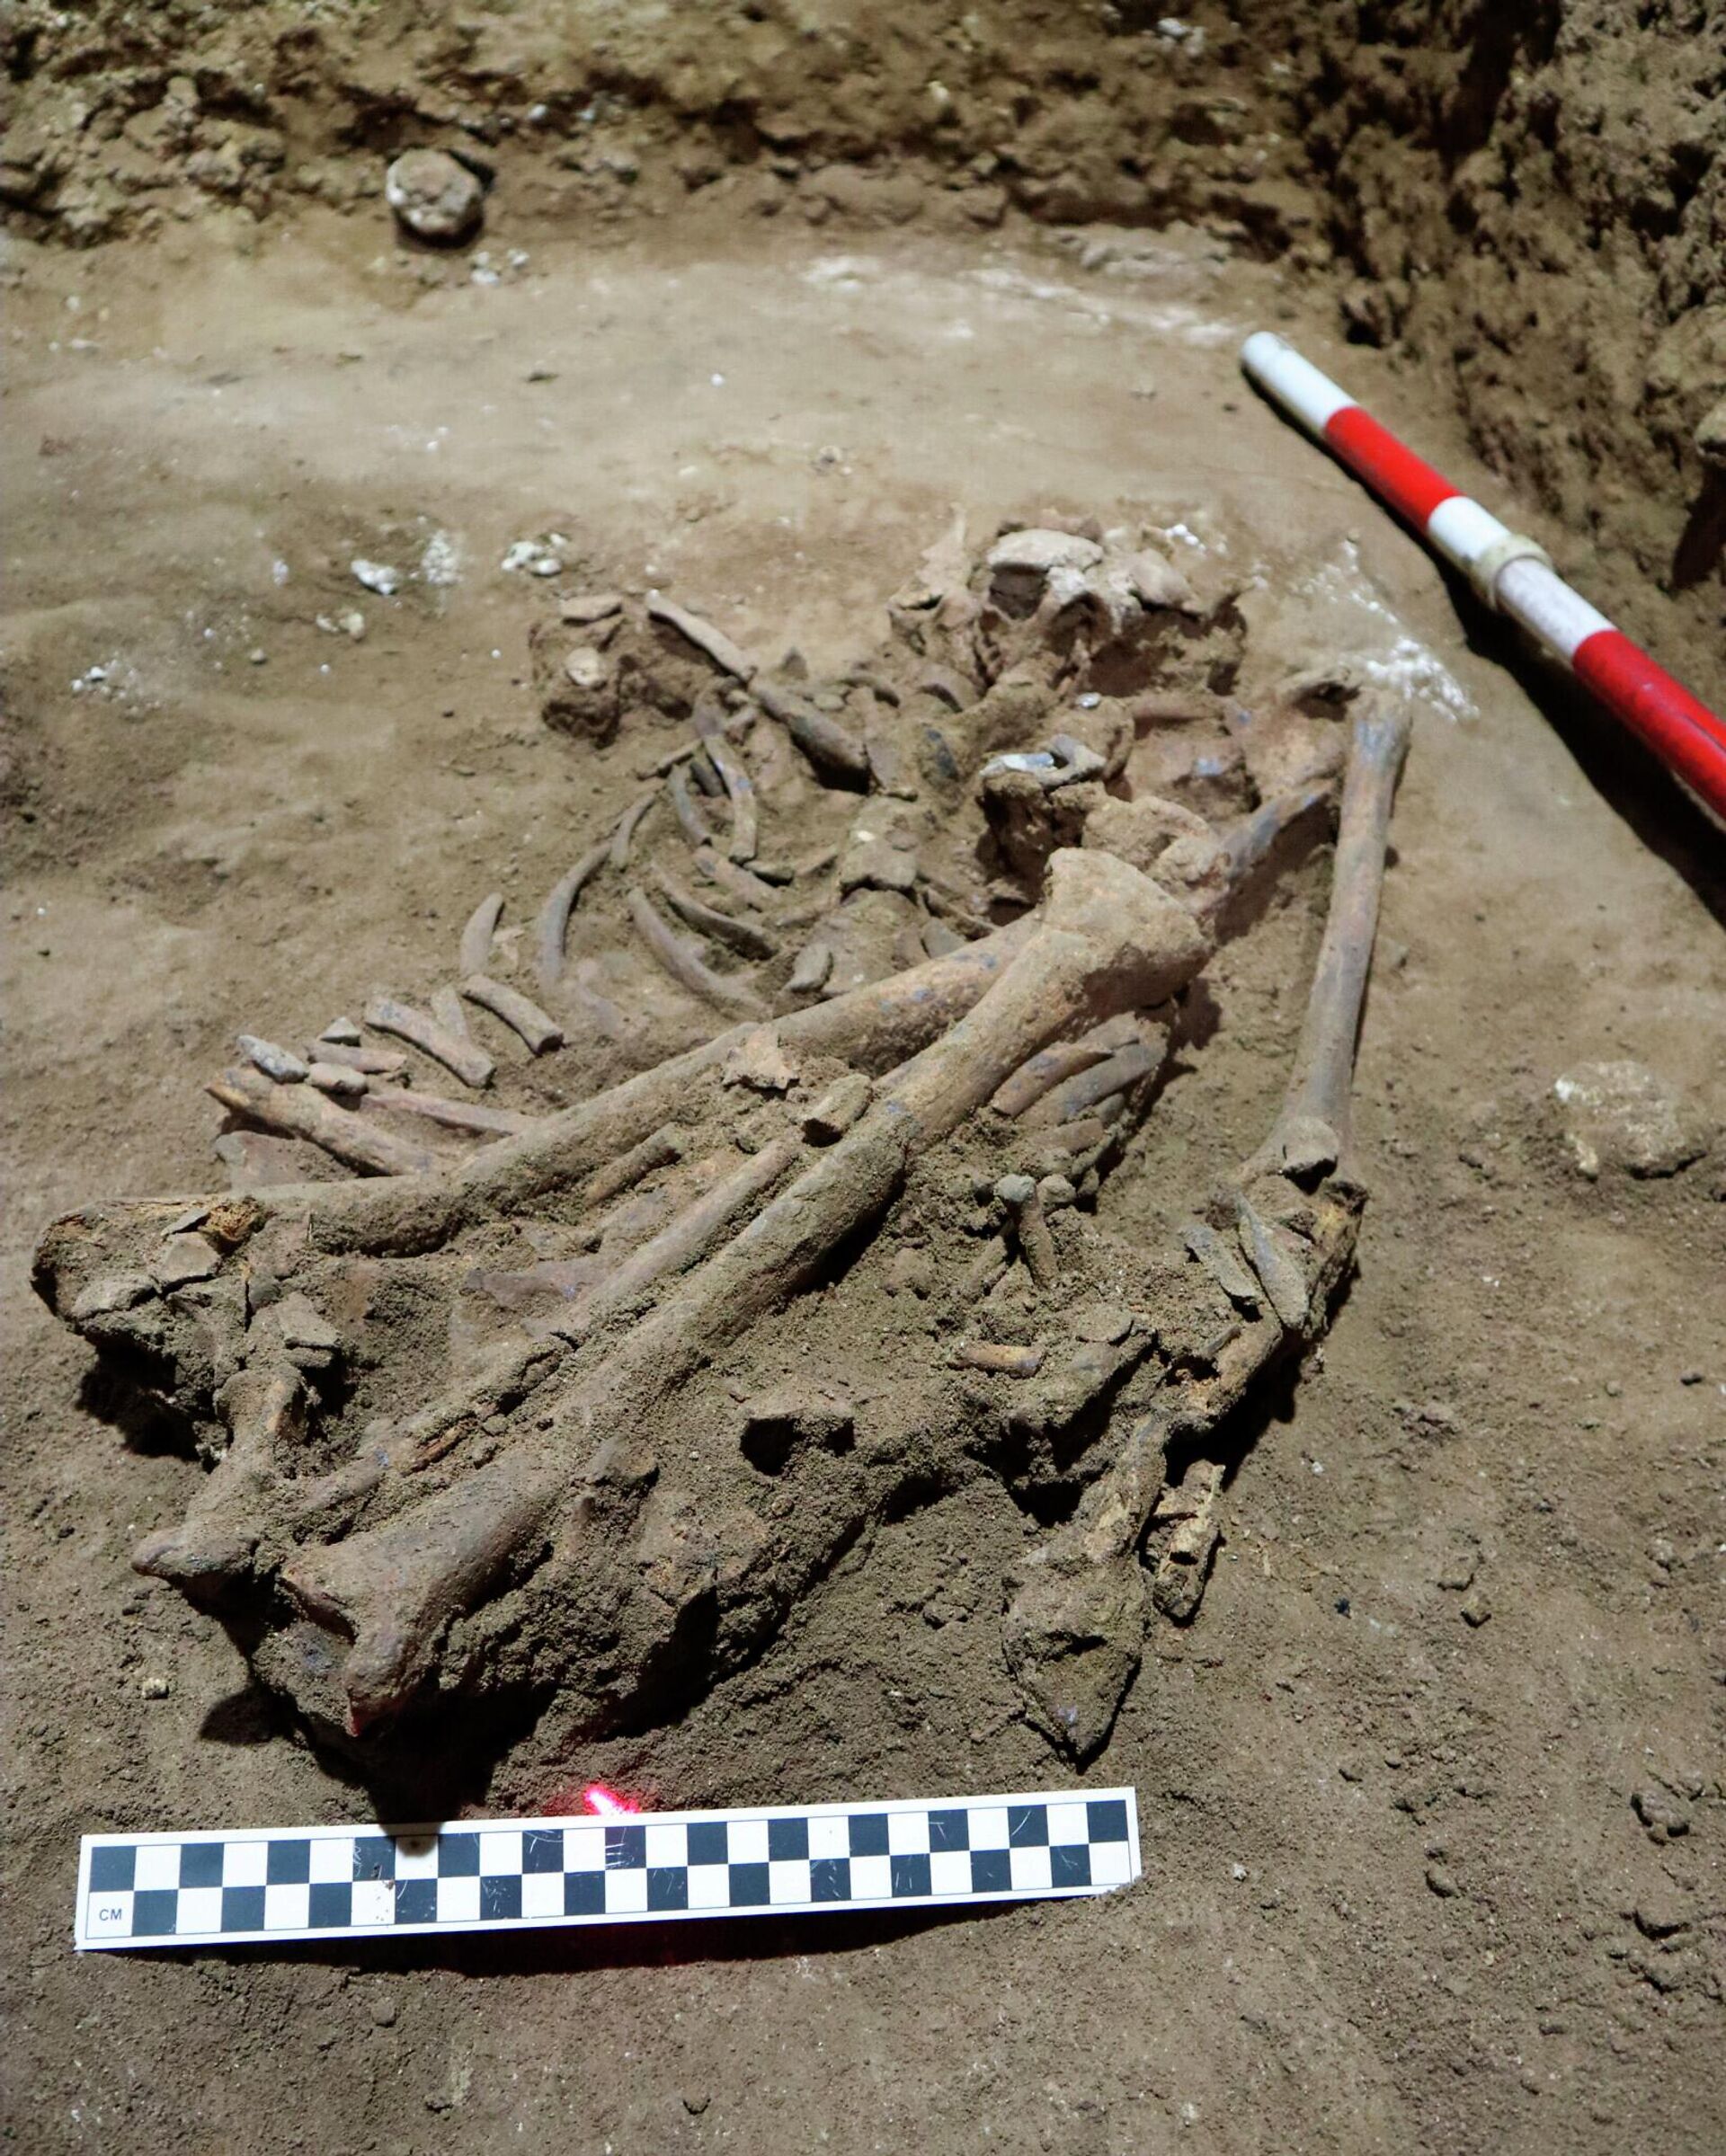 Esqueleto encontrado na Indonésia revela 1ª amputação cirúrgica há 31 mil anos - Sputnik Brasil, 1920, 08.09.2022